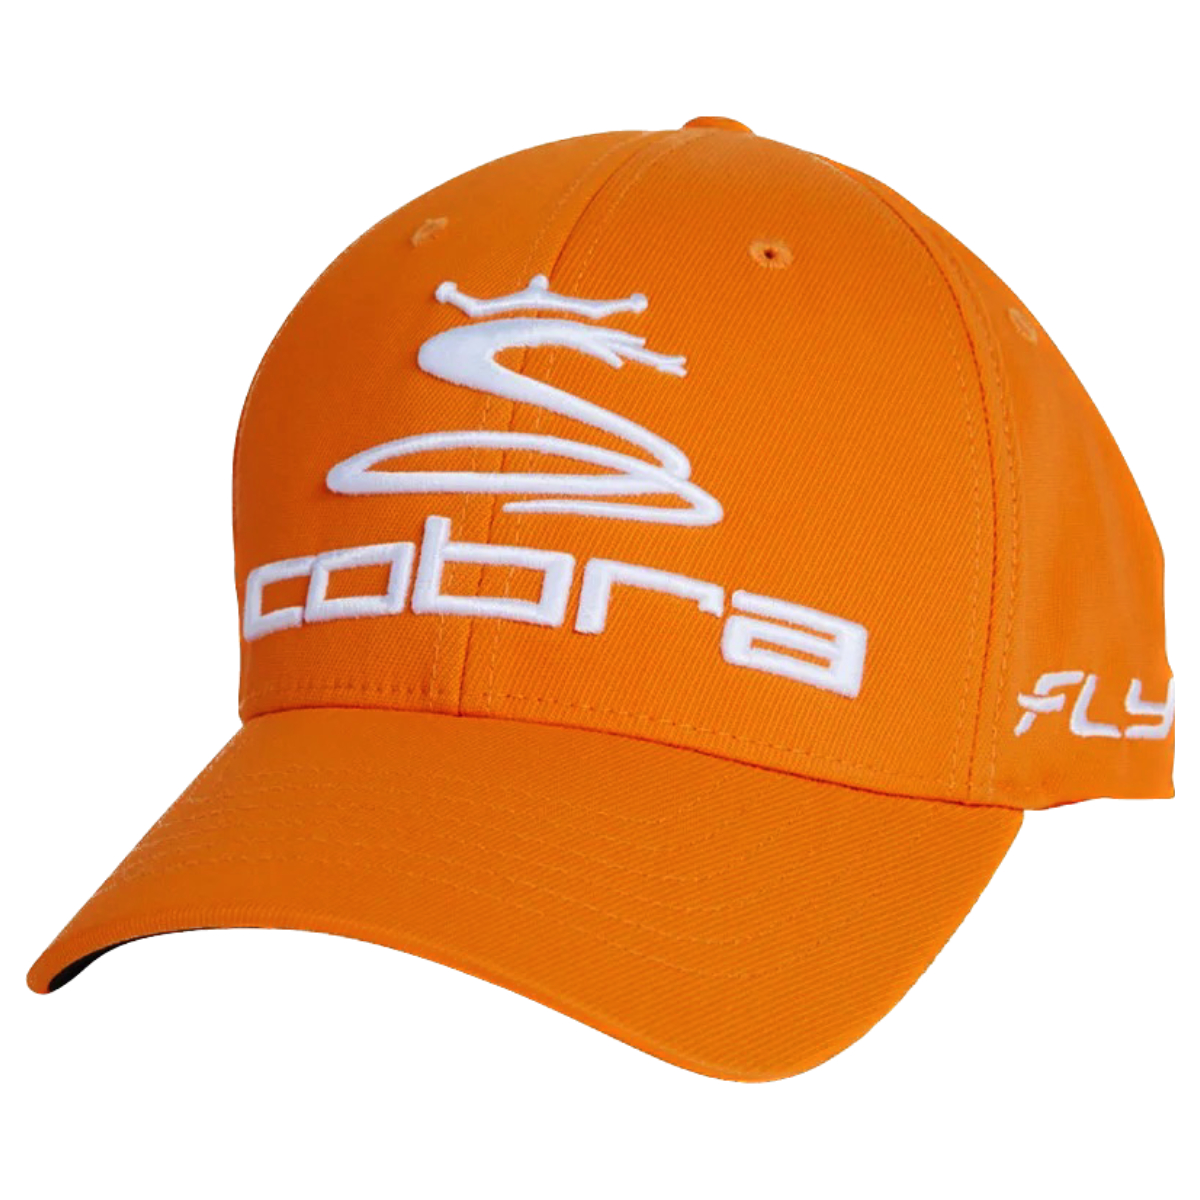 Cobra Fly-Z Cap Orange